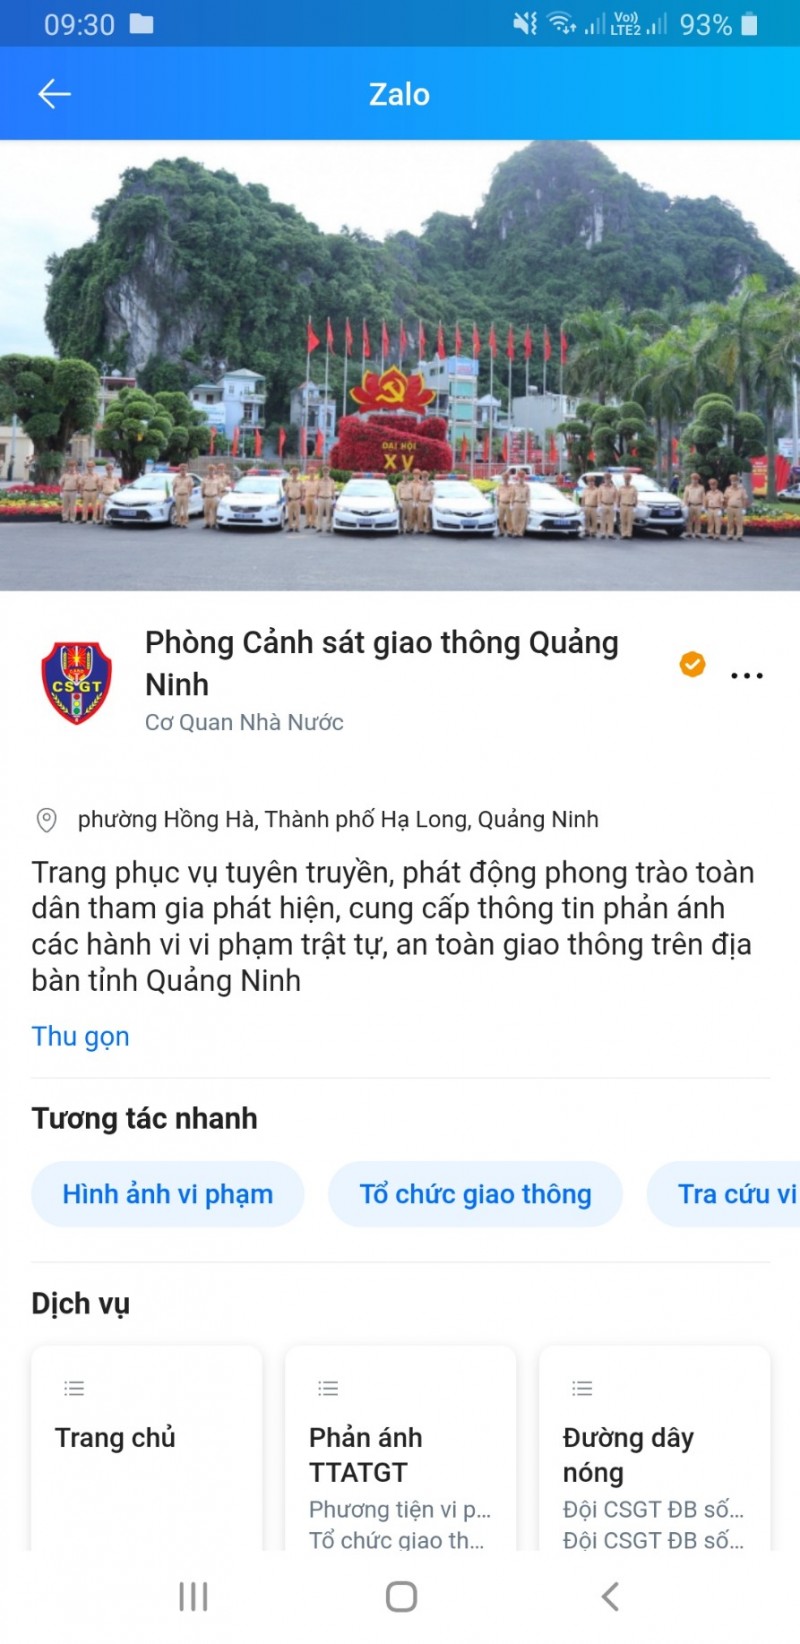 Ra mắt trang Zalo tiếp nhận phản ánh về trật tự, an toàn giao thông Quảng Ninh